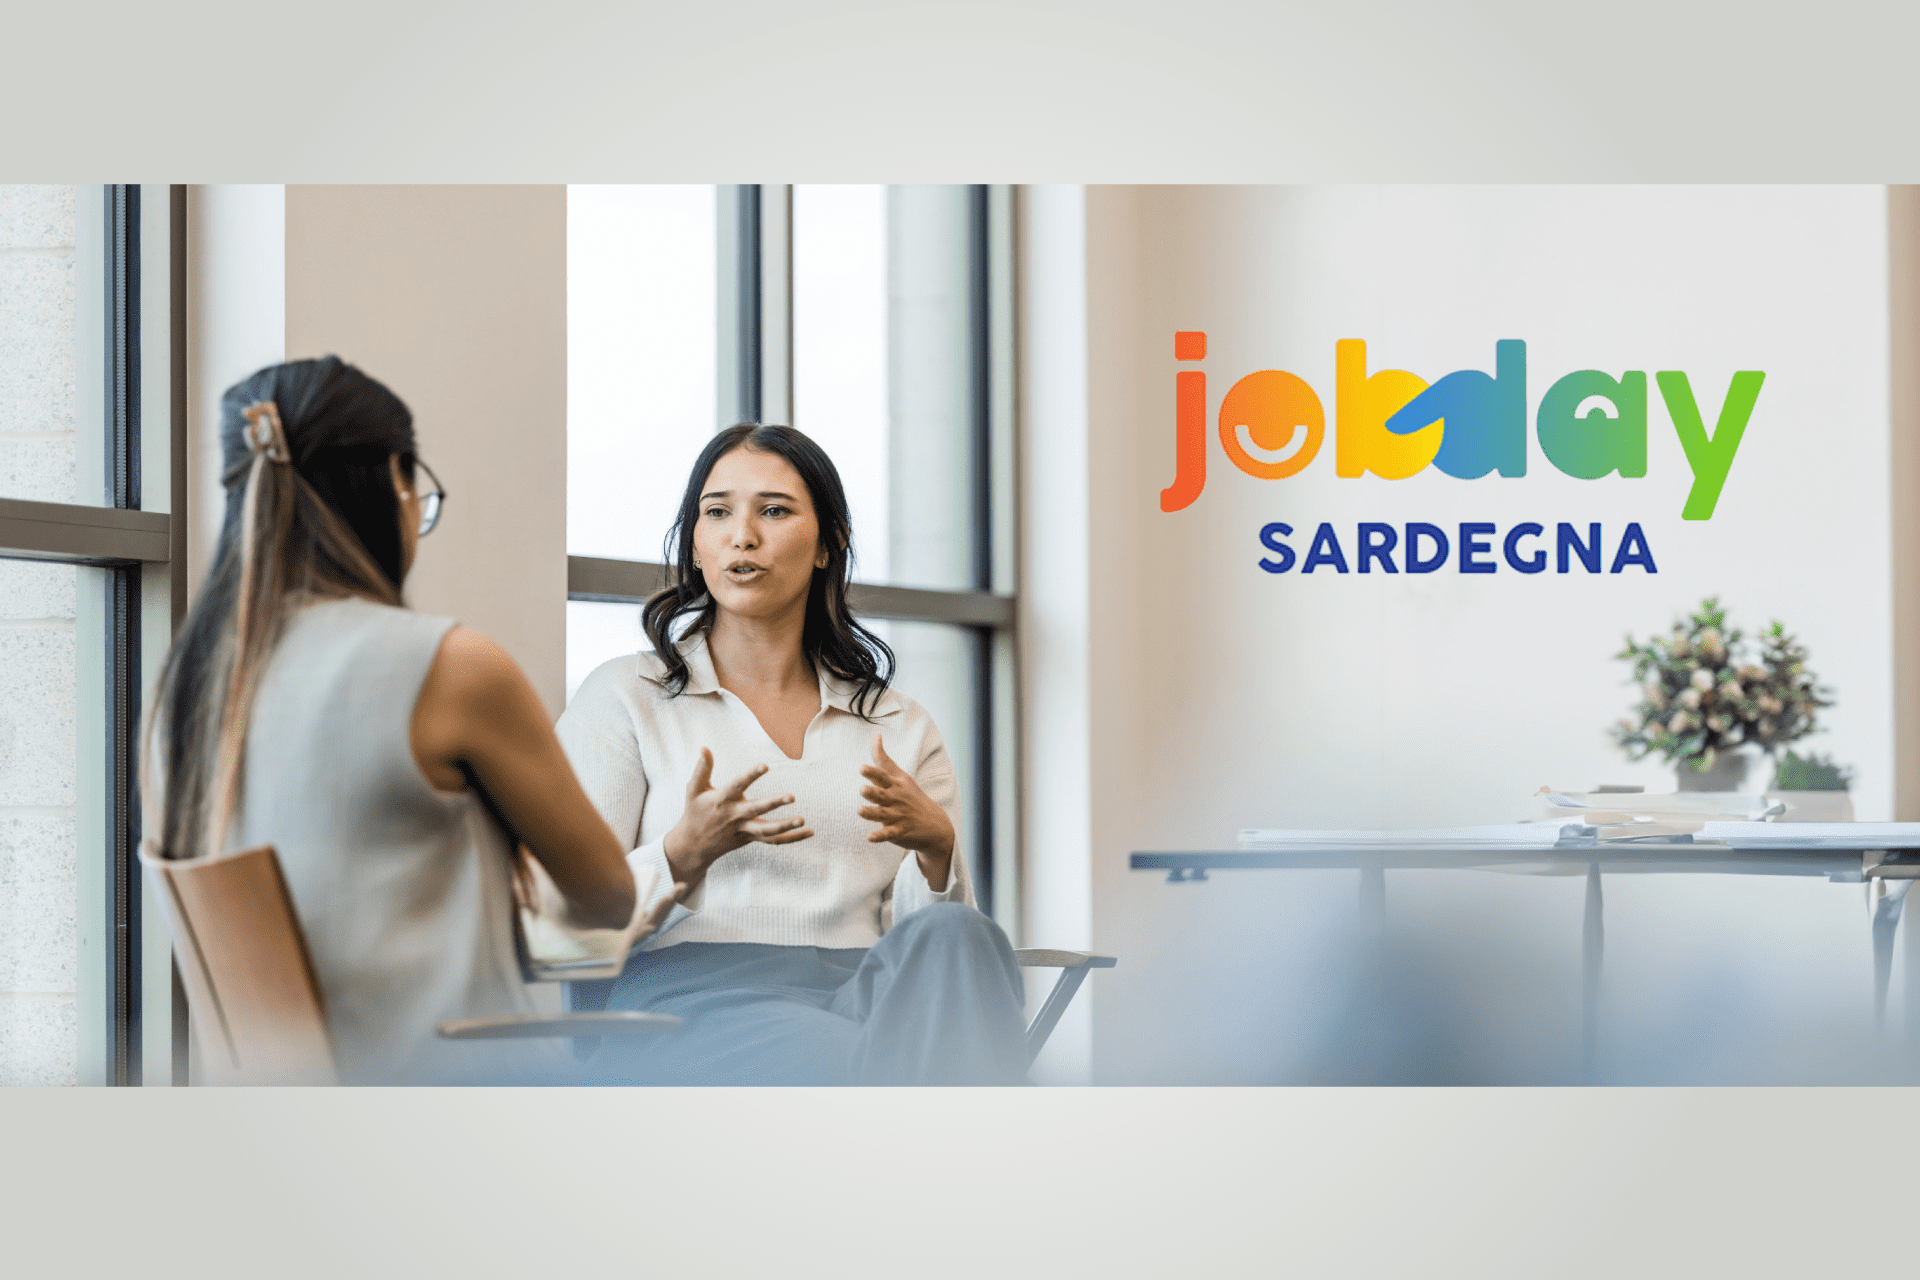  Incontri e opportunità per il lavoro con Job Day Sardegna e Hub Rete Nuoro